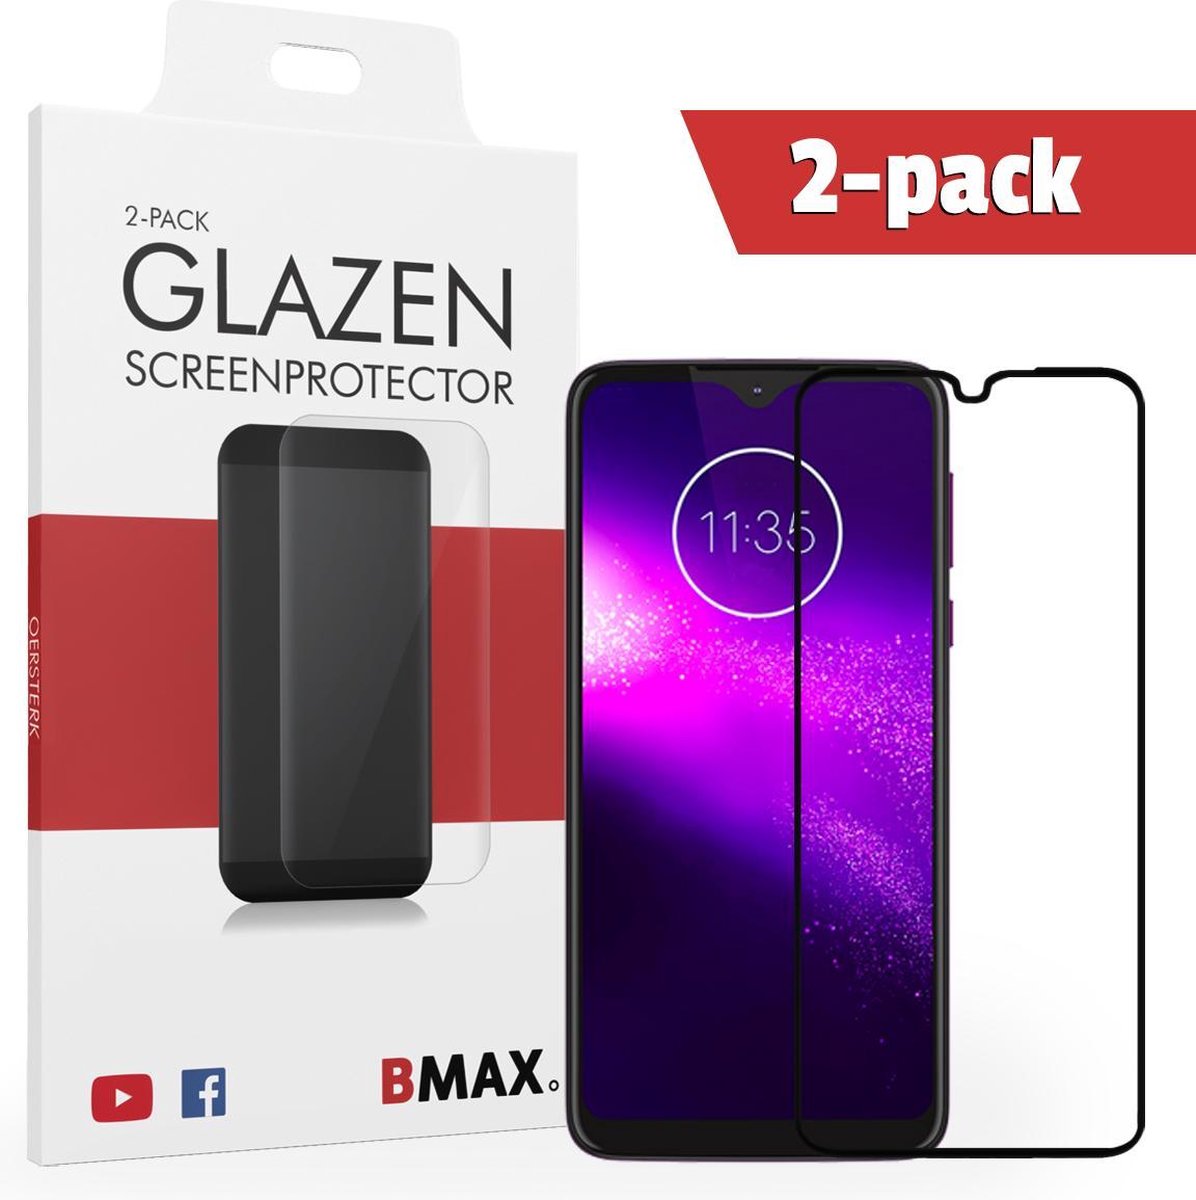 2-pack Bmax Motorola One Macro Screenprotector - Glass - Full Cover 2.5d - Black